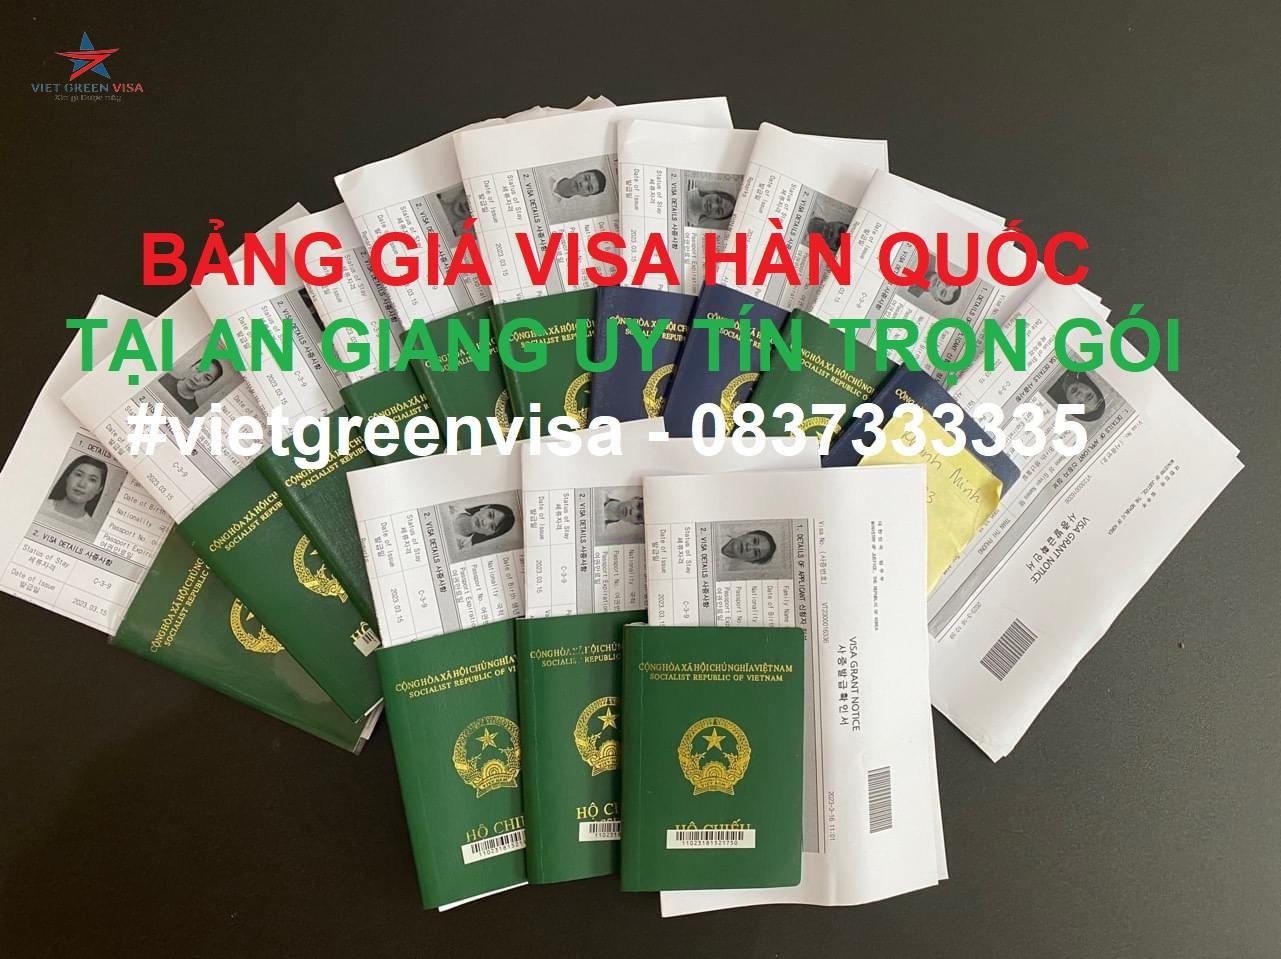 Dịch vụ xin visa Hàn Quốc tại An Giang trọn gói giá rẻ